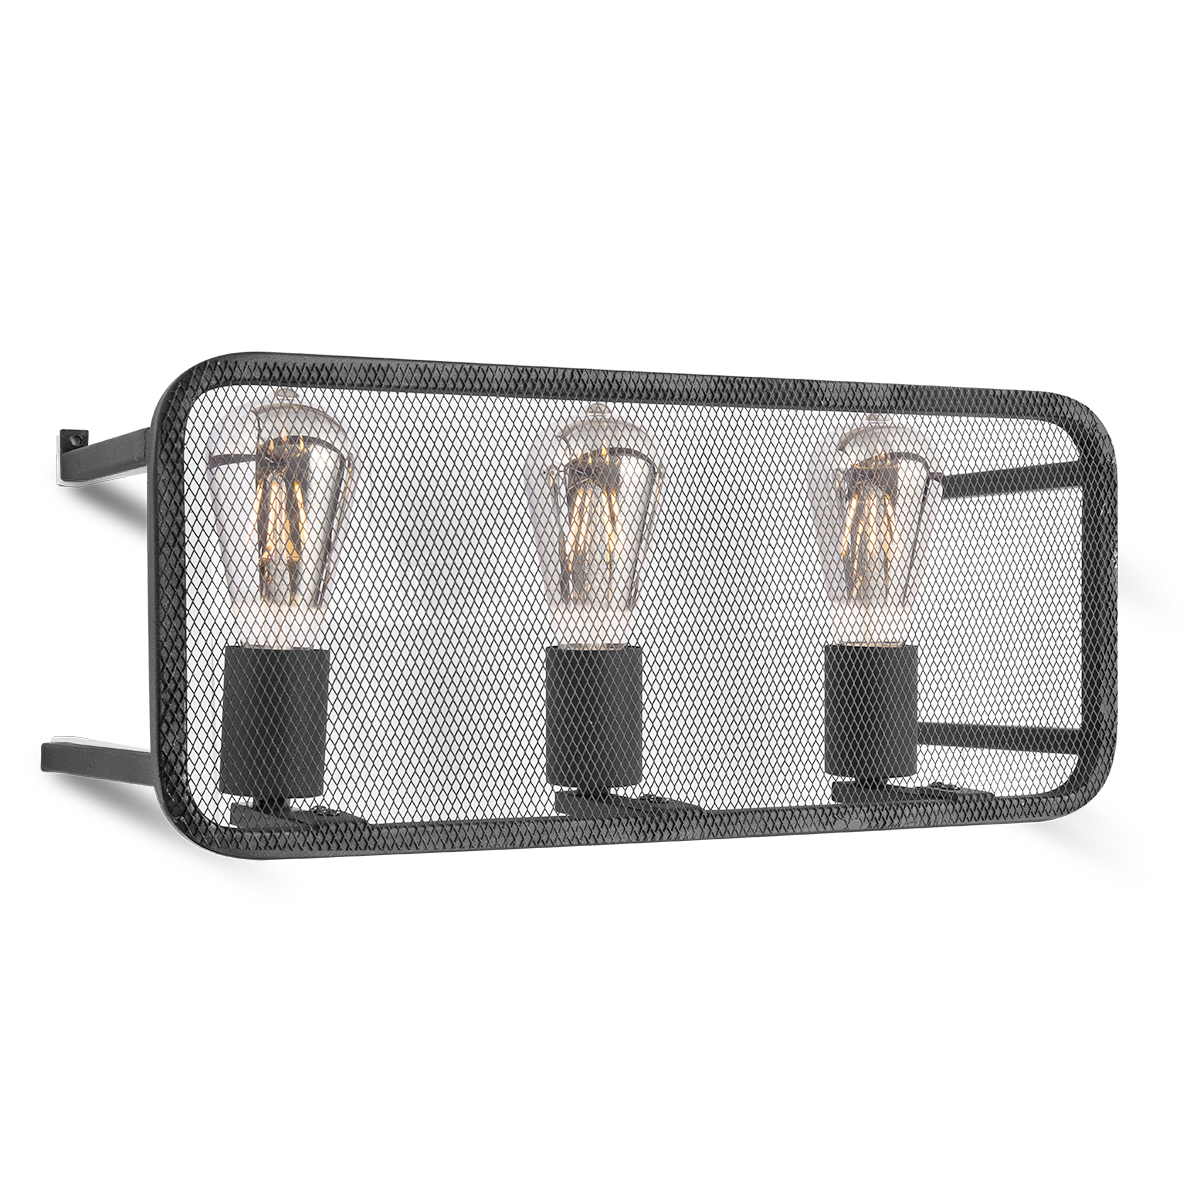 Tangla lighting - TLW3004-03SB - LED Wall lamp 3 Lights - metal - sand black - yarn - E27